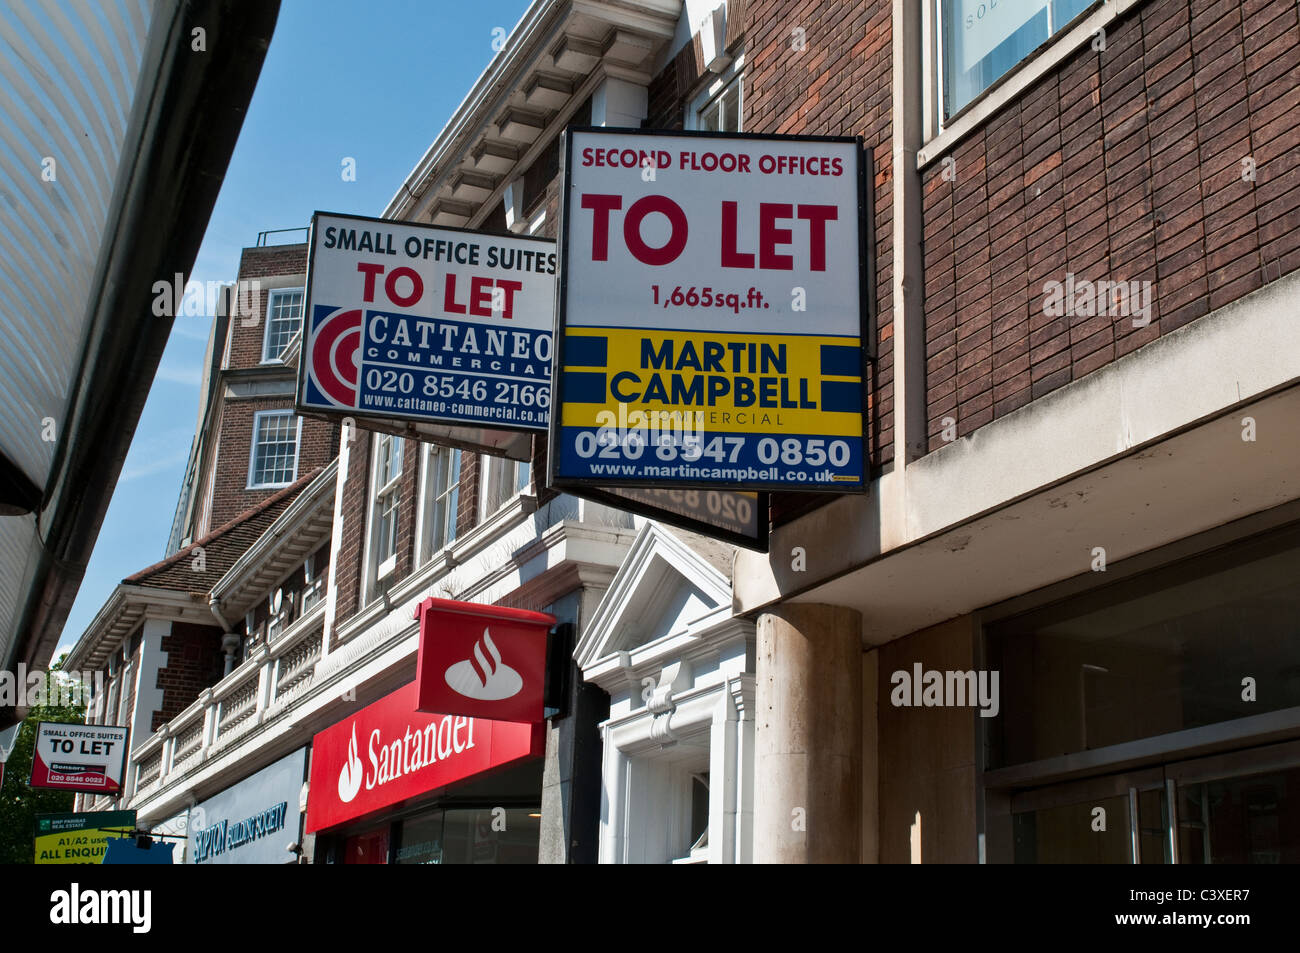 To Let signs and Santander bank, Kingston upon Thames, Surrey, UK Stock Photo